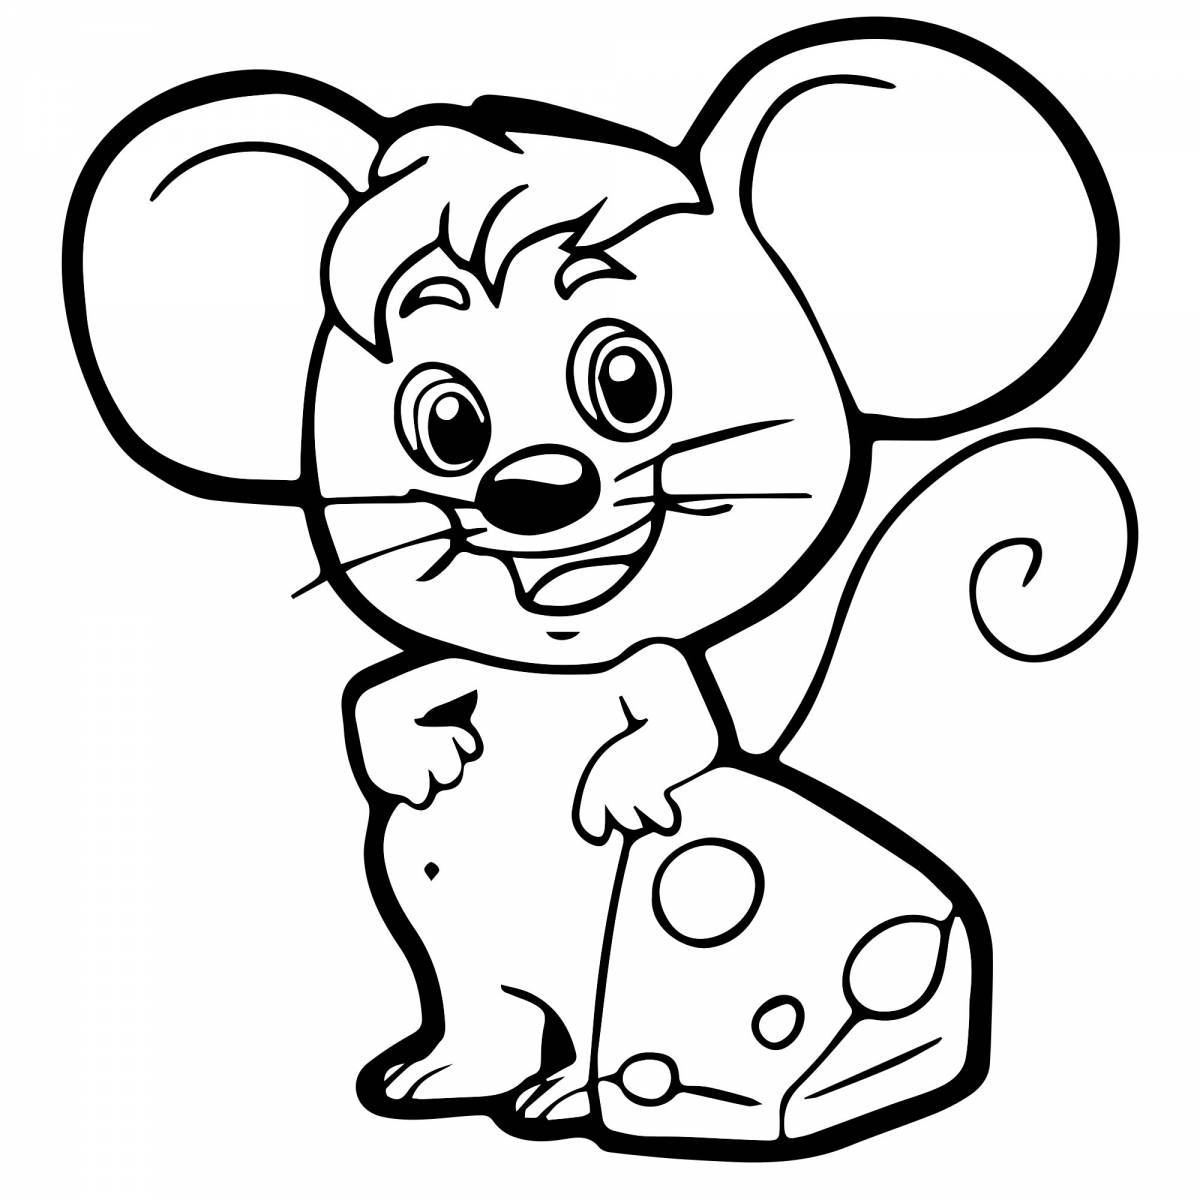 Юмористическая раскраска мышонка